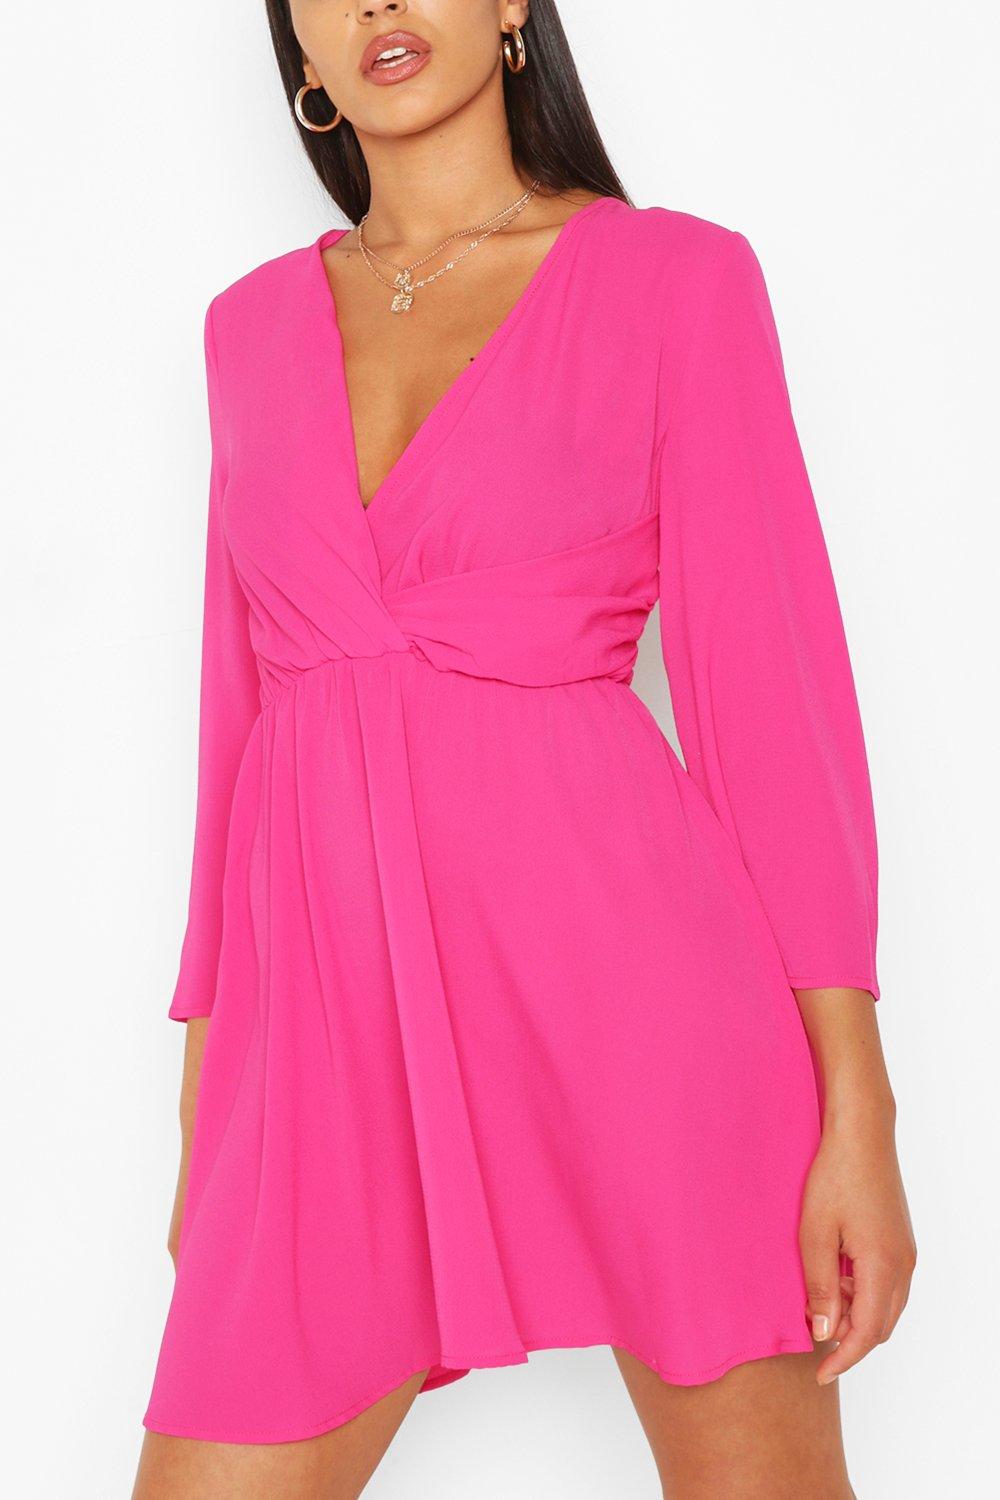 hot pink dress ireland